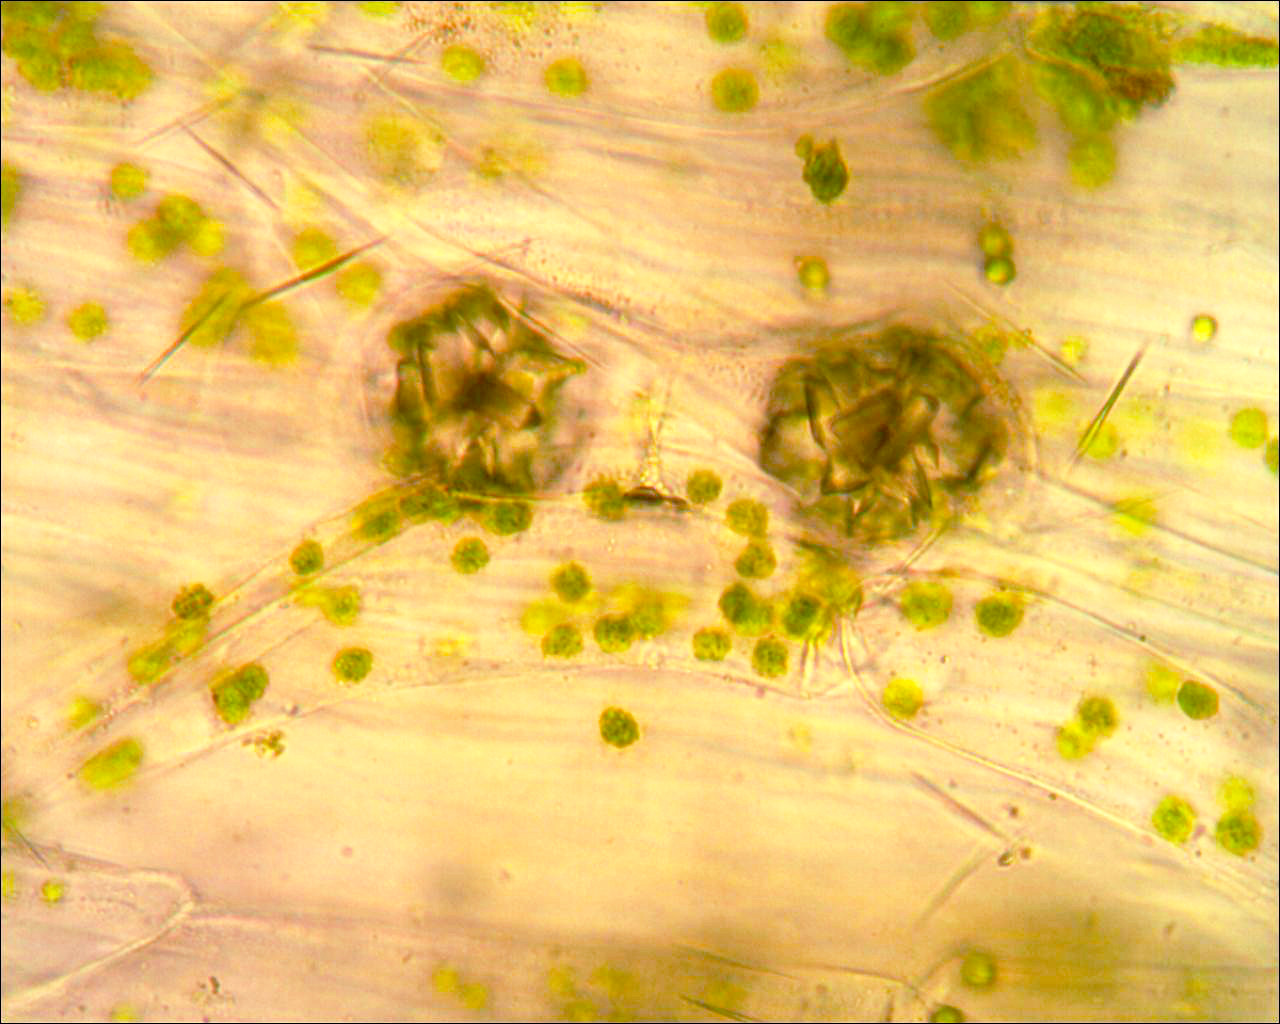 Druse (cristalli di ossalato di calcio) in foglia di Dieffenbachia